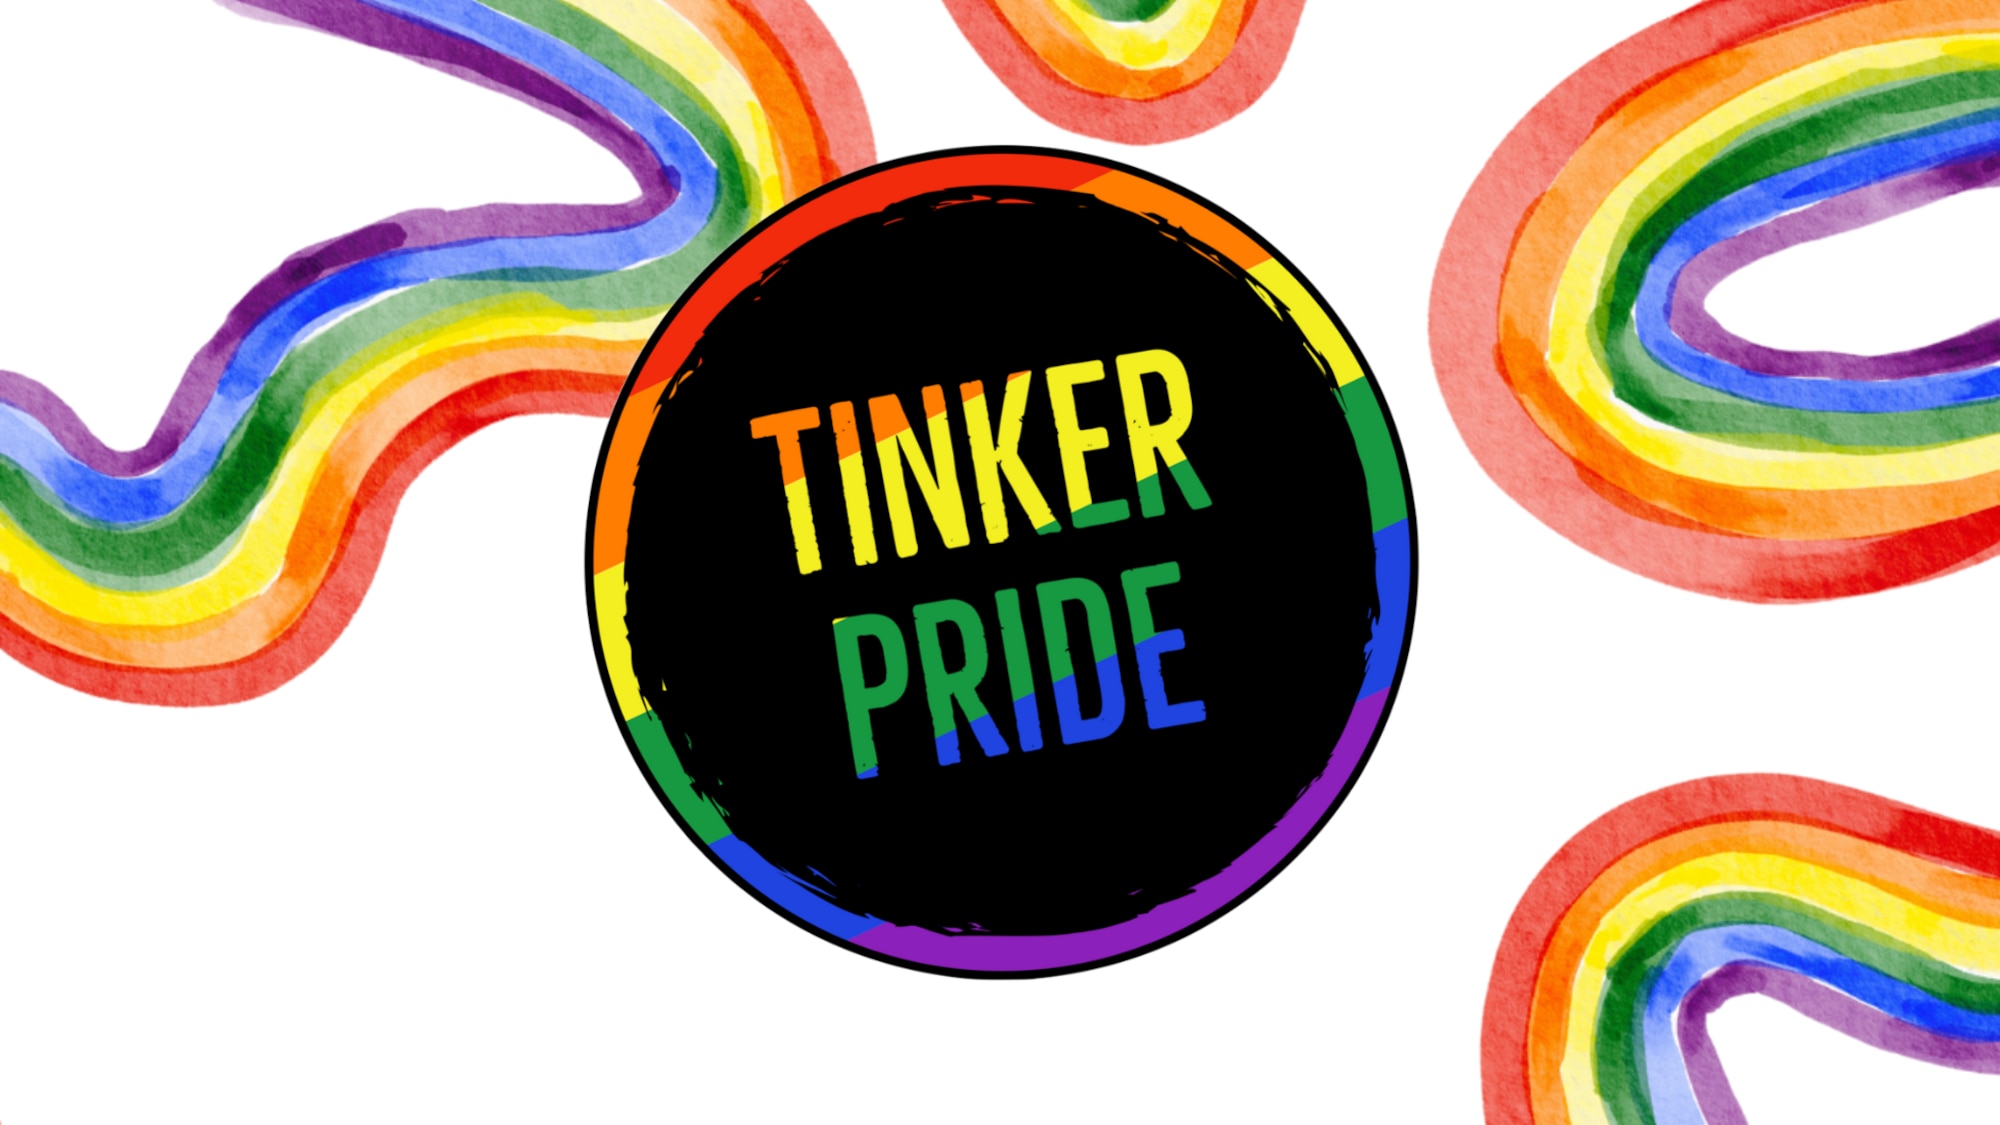 Tinker Pride logo